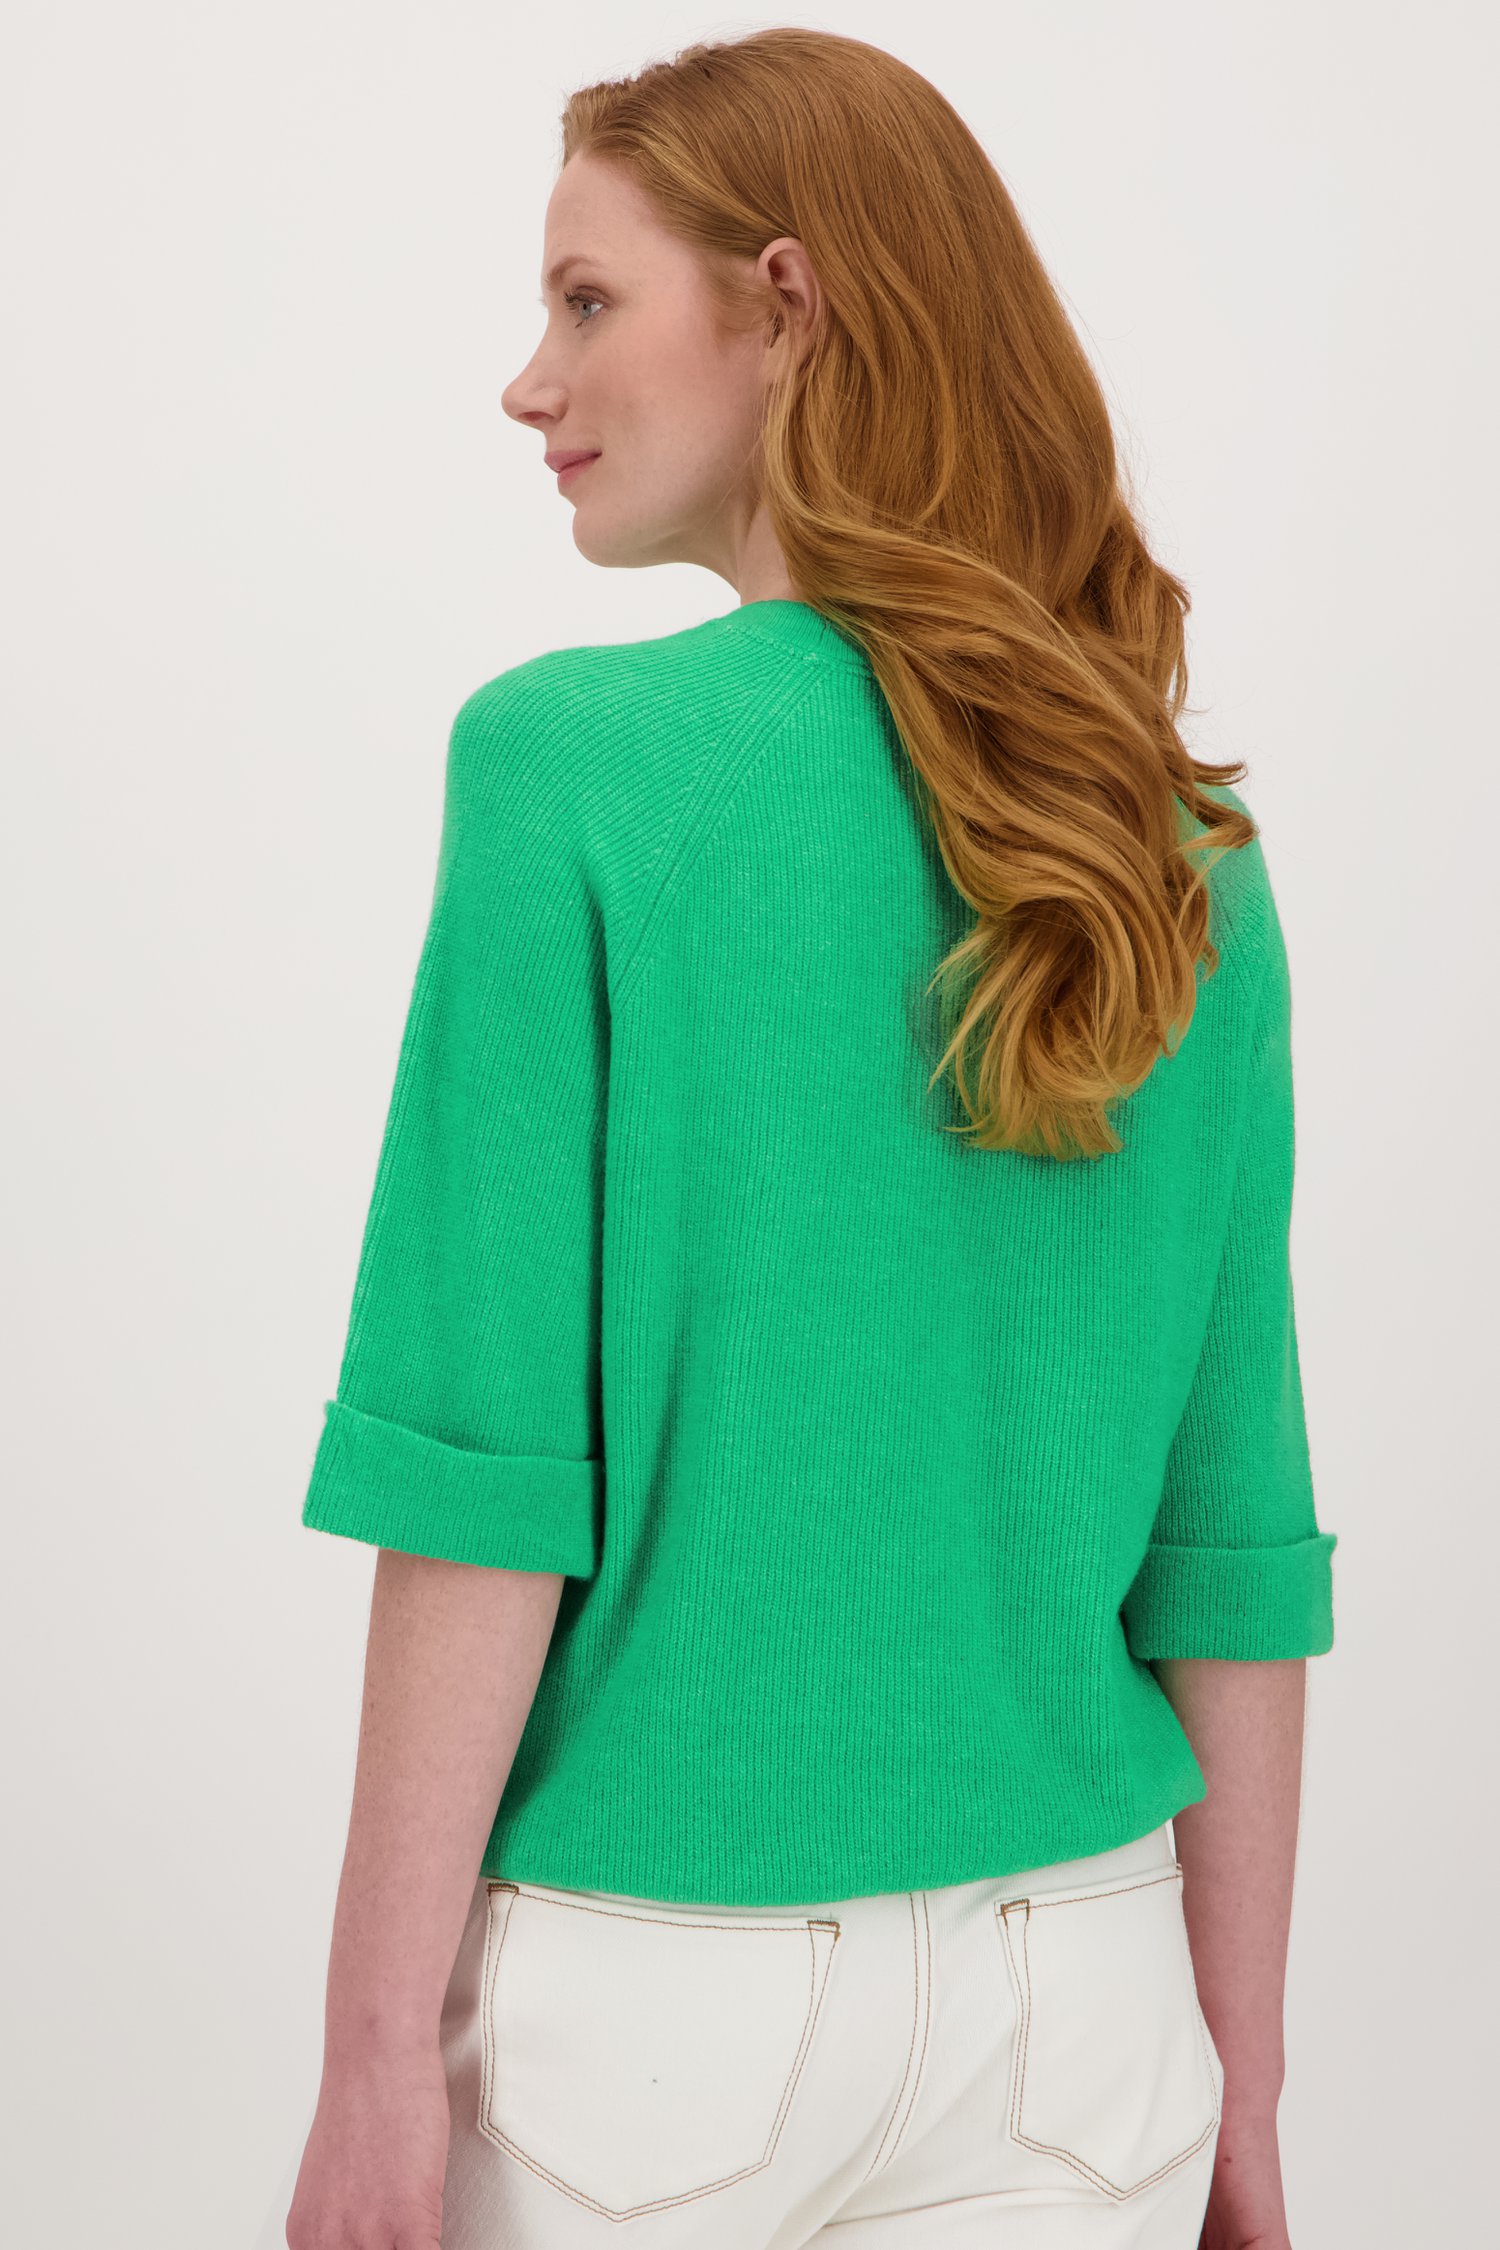 Groene trui met halflange mouwen van Libelle voor Dames